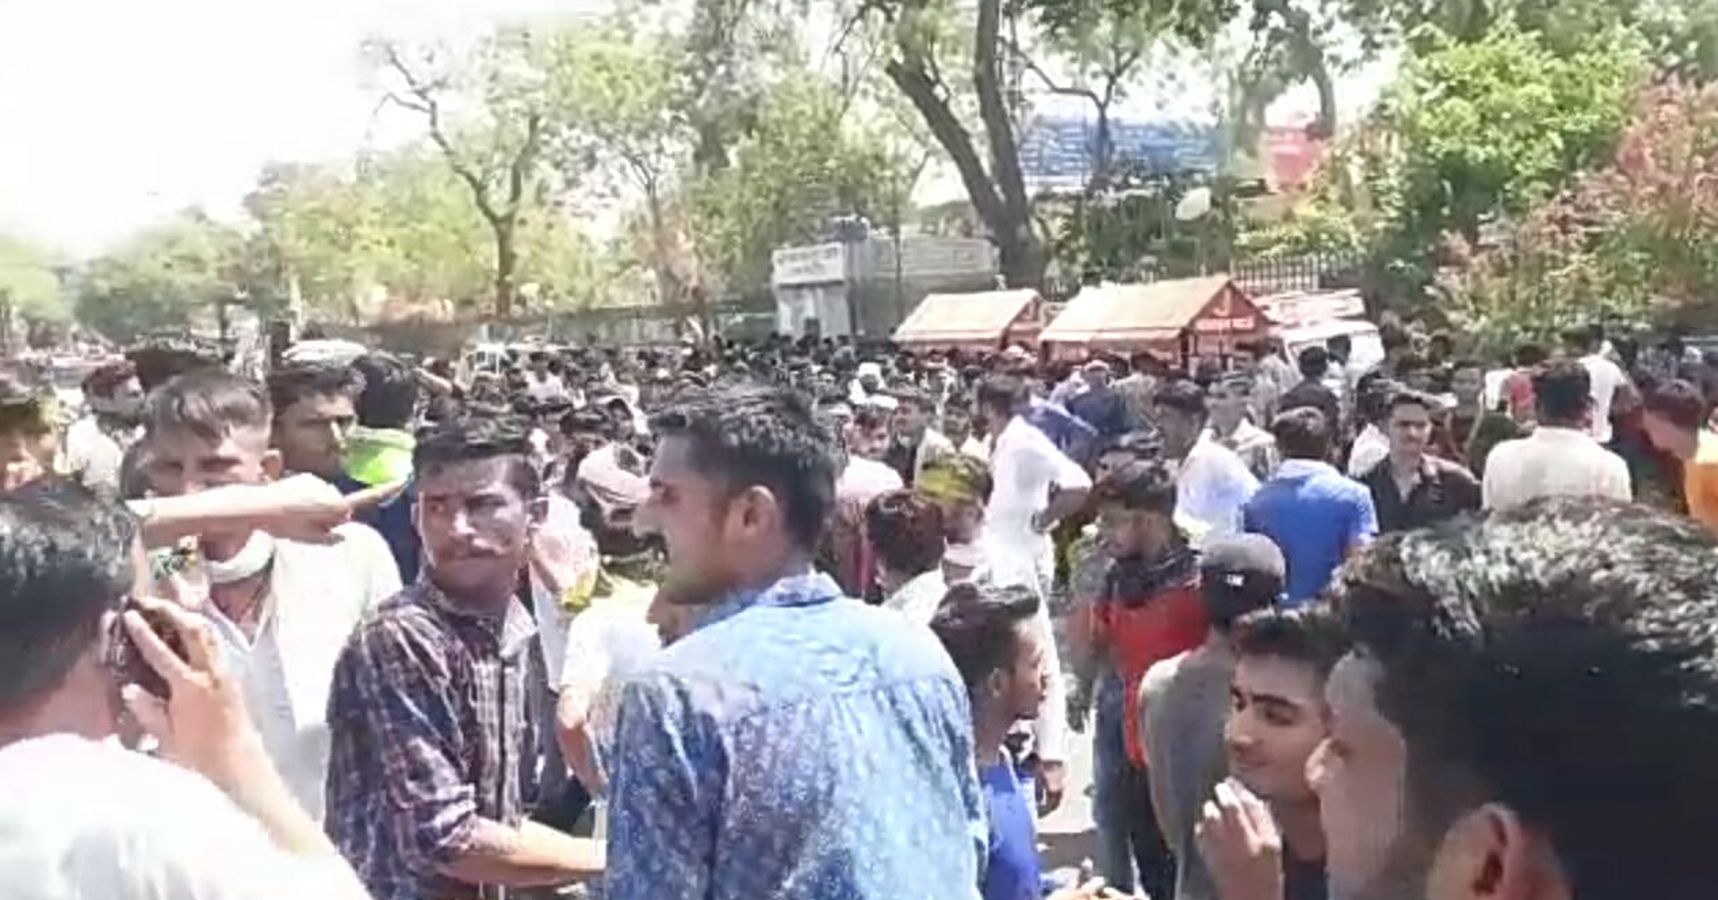 Agnipath : अग्निपथ योजना के विरोध में (Protesh of Agnipath) प्रदर्शन, पुलिस पर पथराव